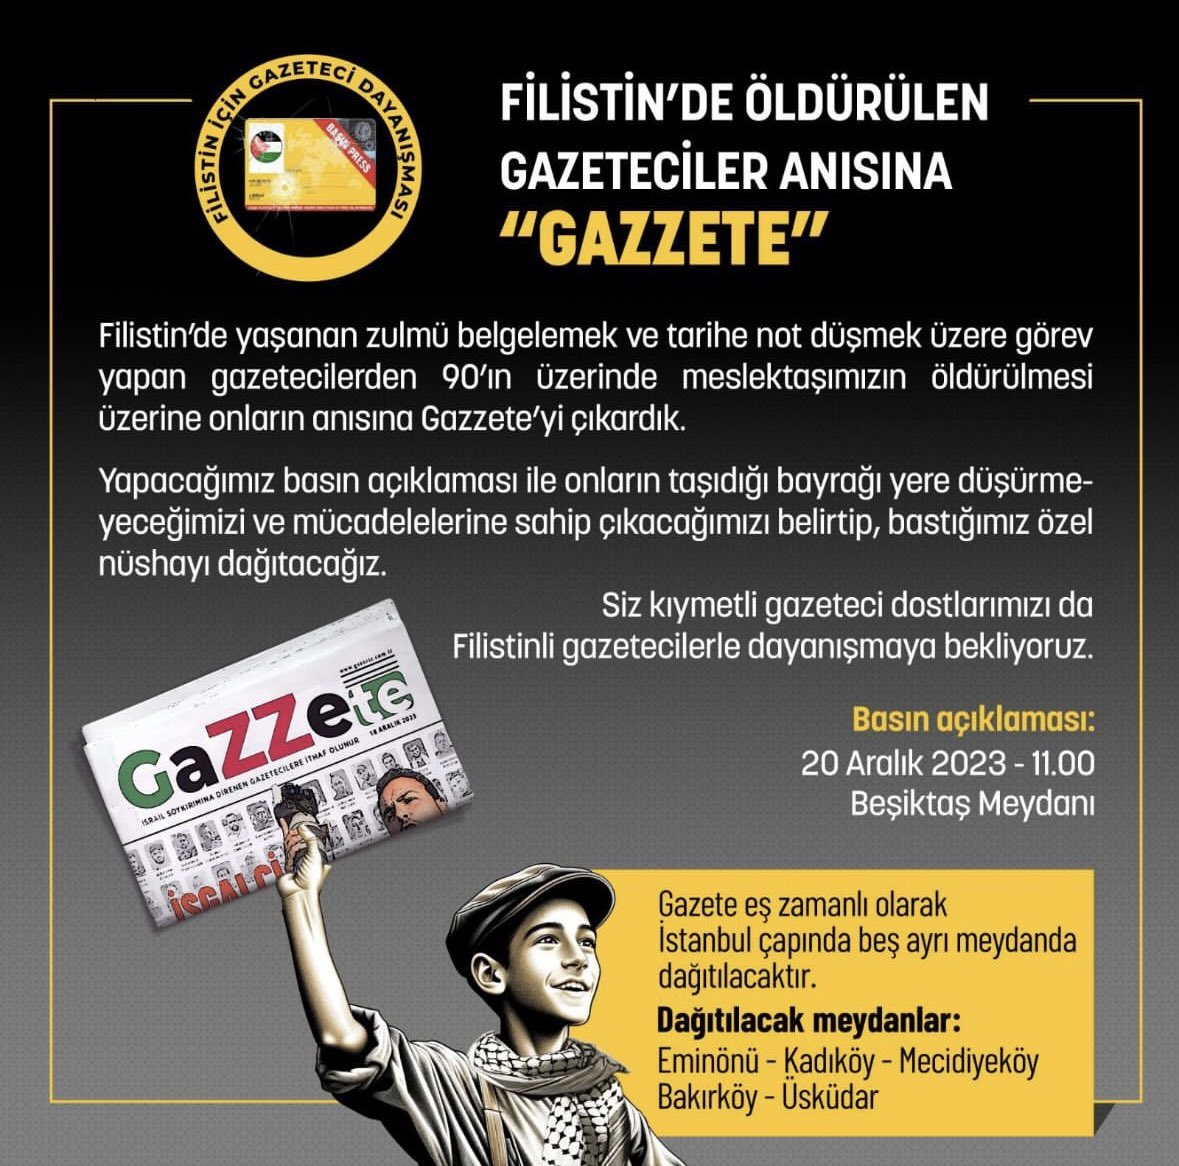 Basın Daveti: FİLİSTİN’DE ÖLDÜRÜLEN GAZETECİLER ANISINA “GAZZETE”   Filistin’de yaşanan zulmü belgelemek ve tarihe not düşmek üzere görev yapan gazetecilerden 90’ın üzerinde meslektaşımızın öldürülmesi üzerine onların anısına Gazzete’yi çıkardık. Yapacağımız basın açıklaması ile…